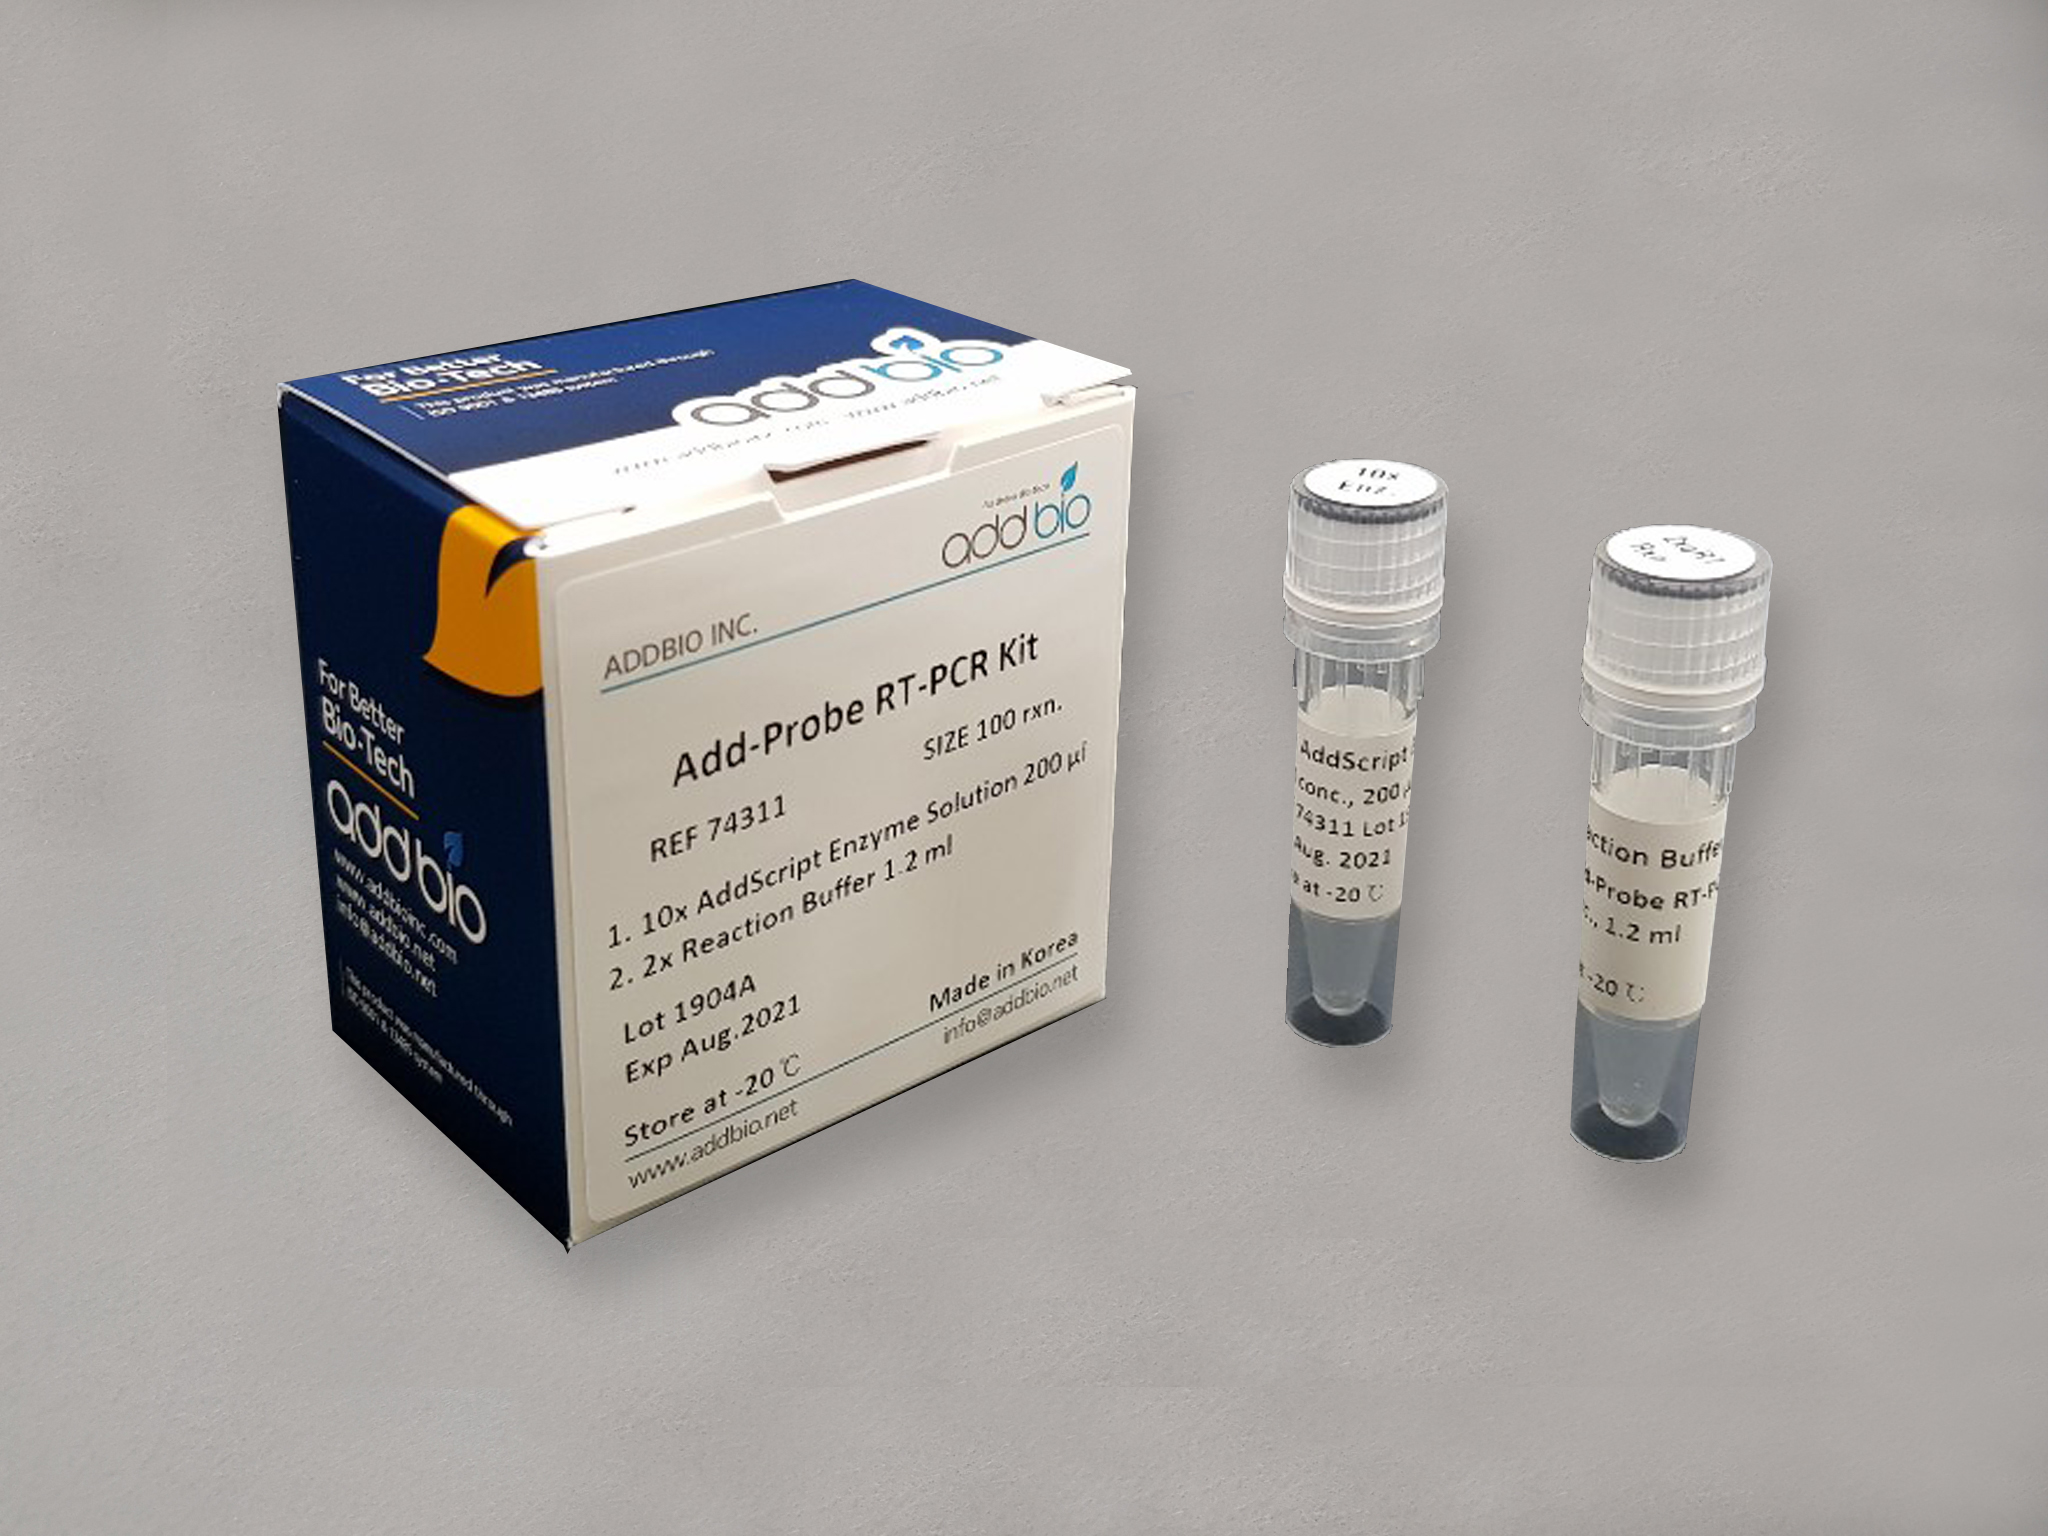 کیت پروب RT-PCR (Add-Probe RT-PCR Kit) - شرکت درمان نگار آیندگان